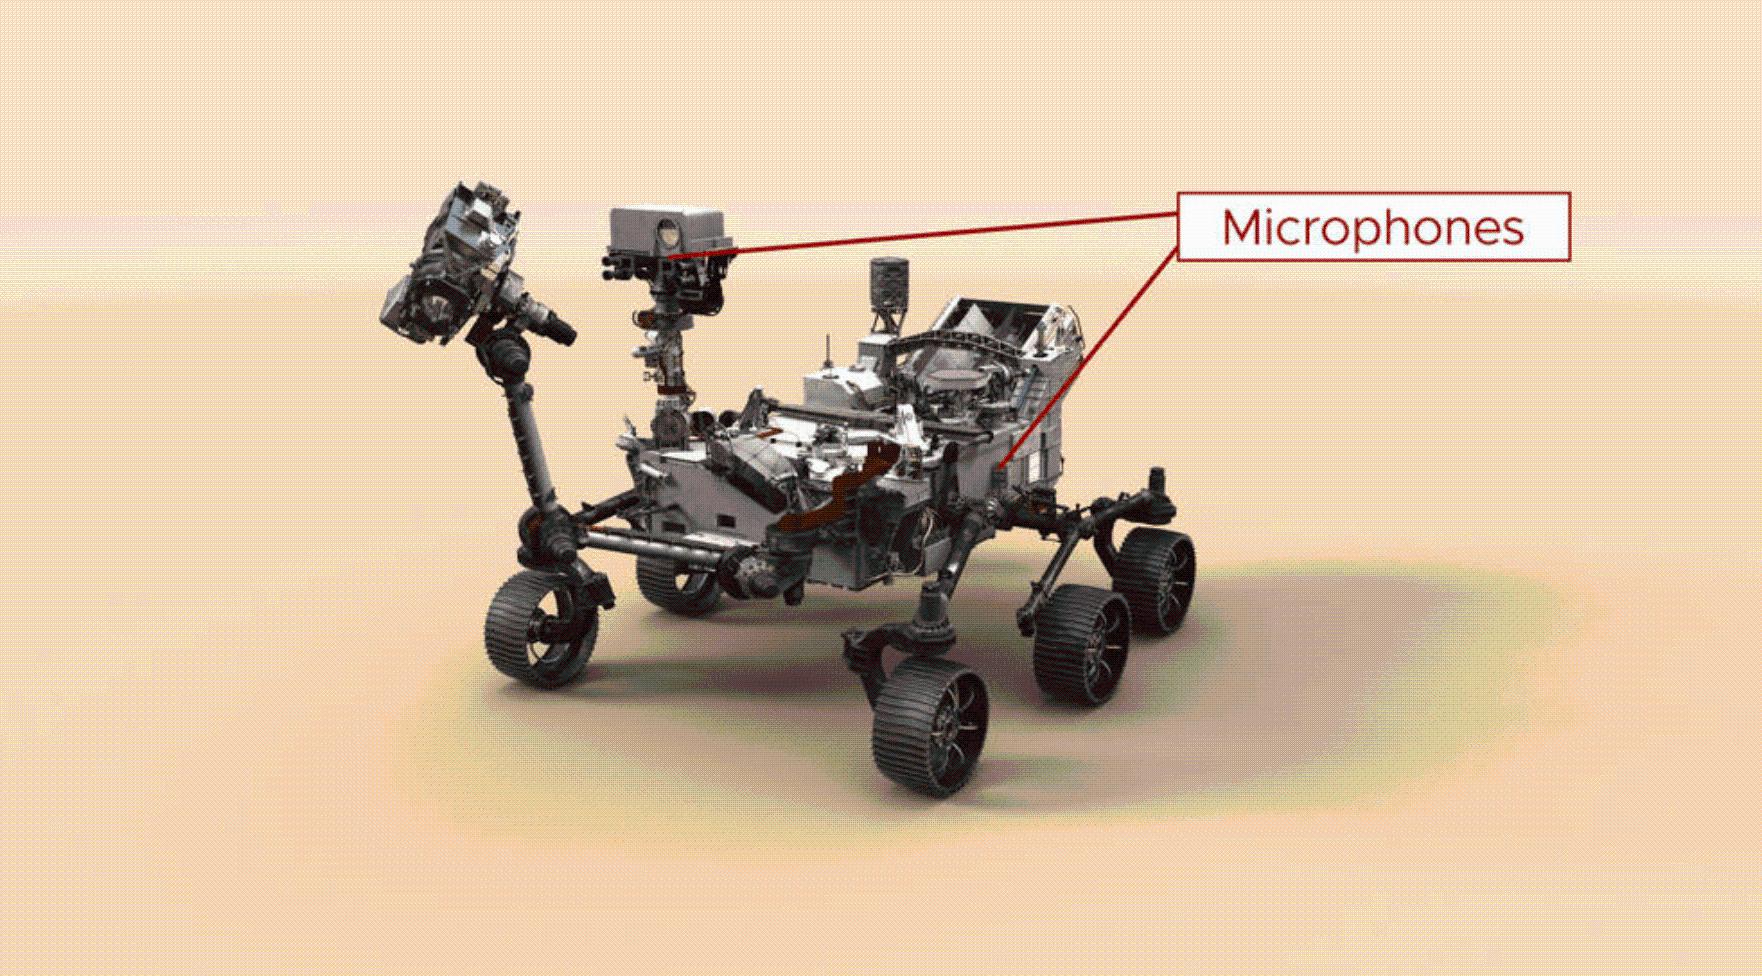 毅力号火星车捕捉到的声音揭示：火星上声音传播速度比地球慢